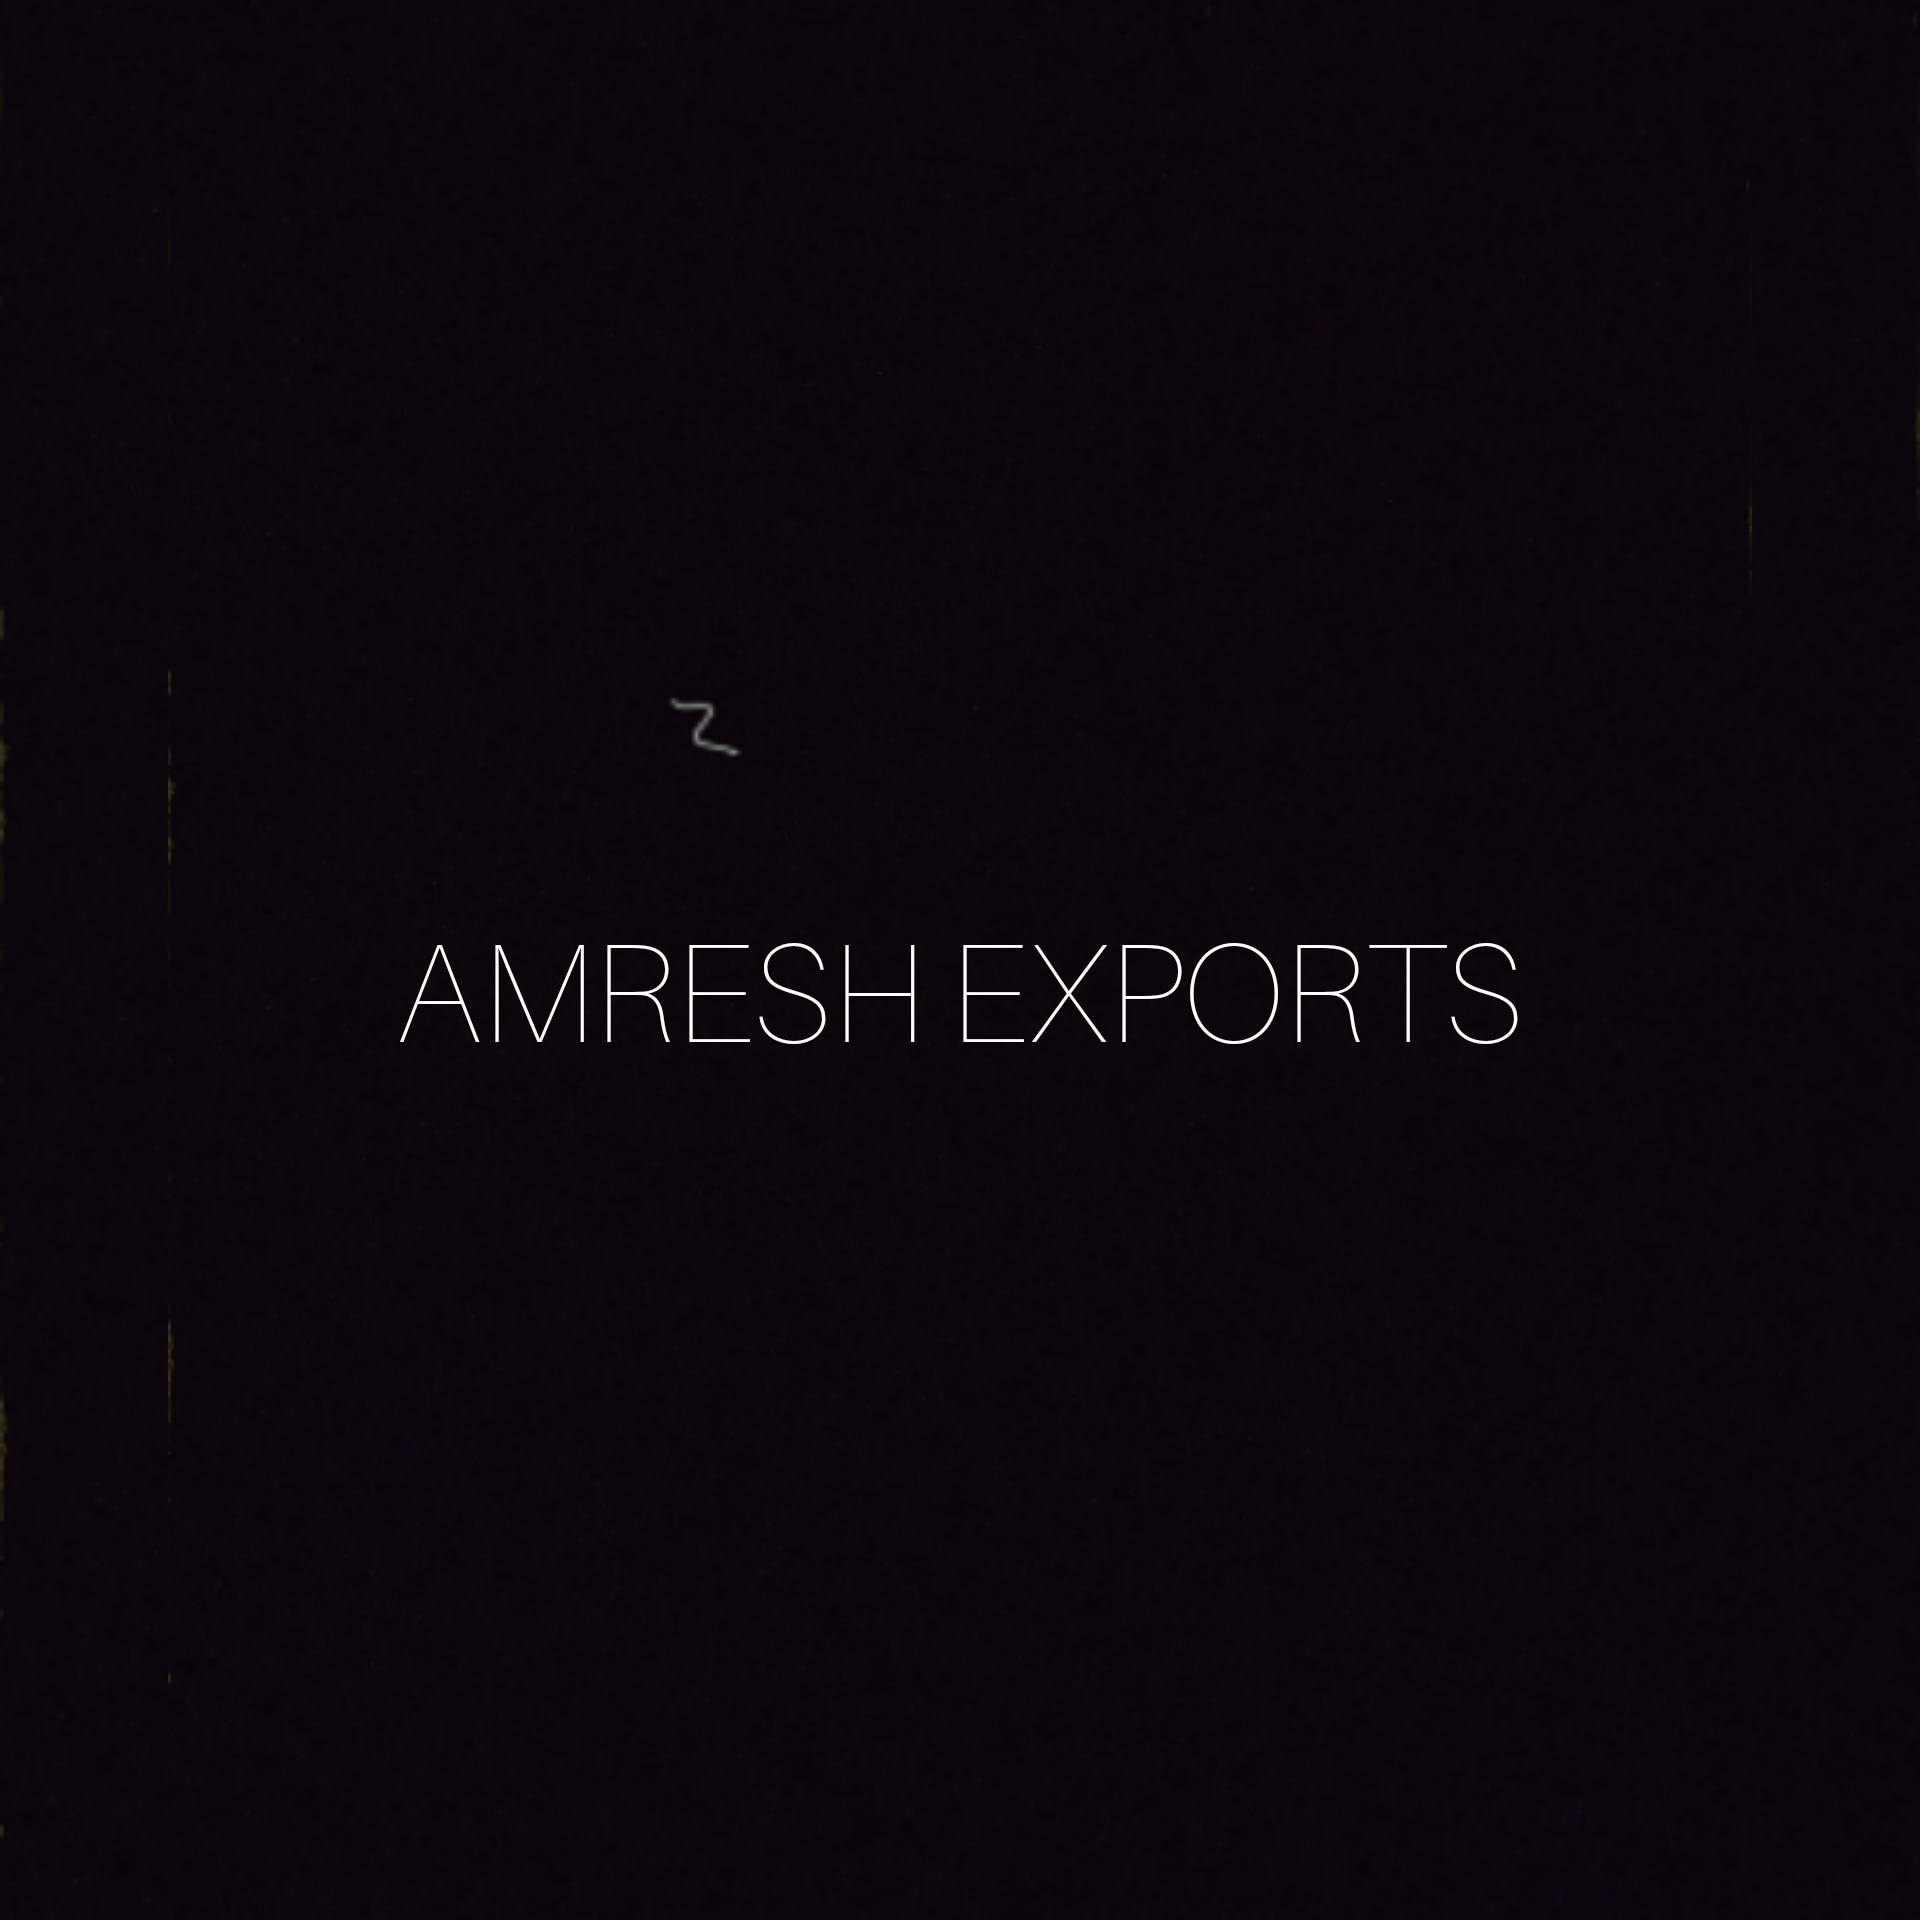 Amresh exports